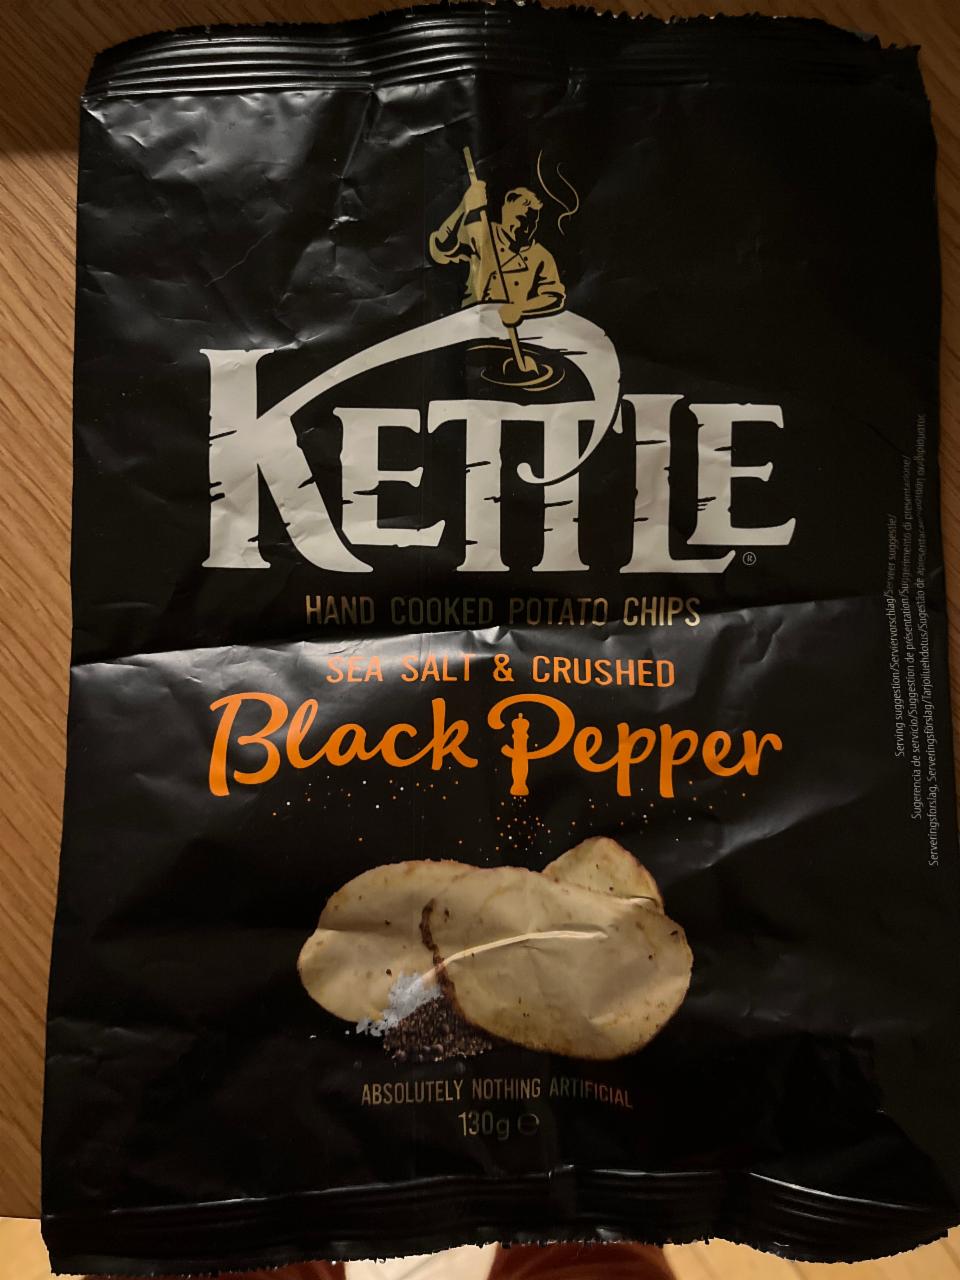 Fotografie - Black Pepper potatoes chips Kettle